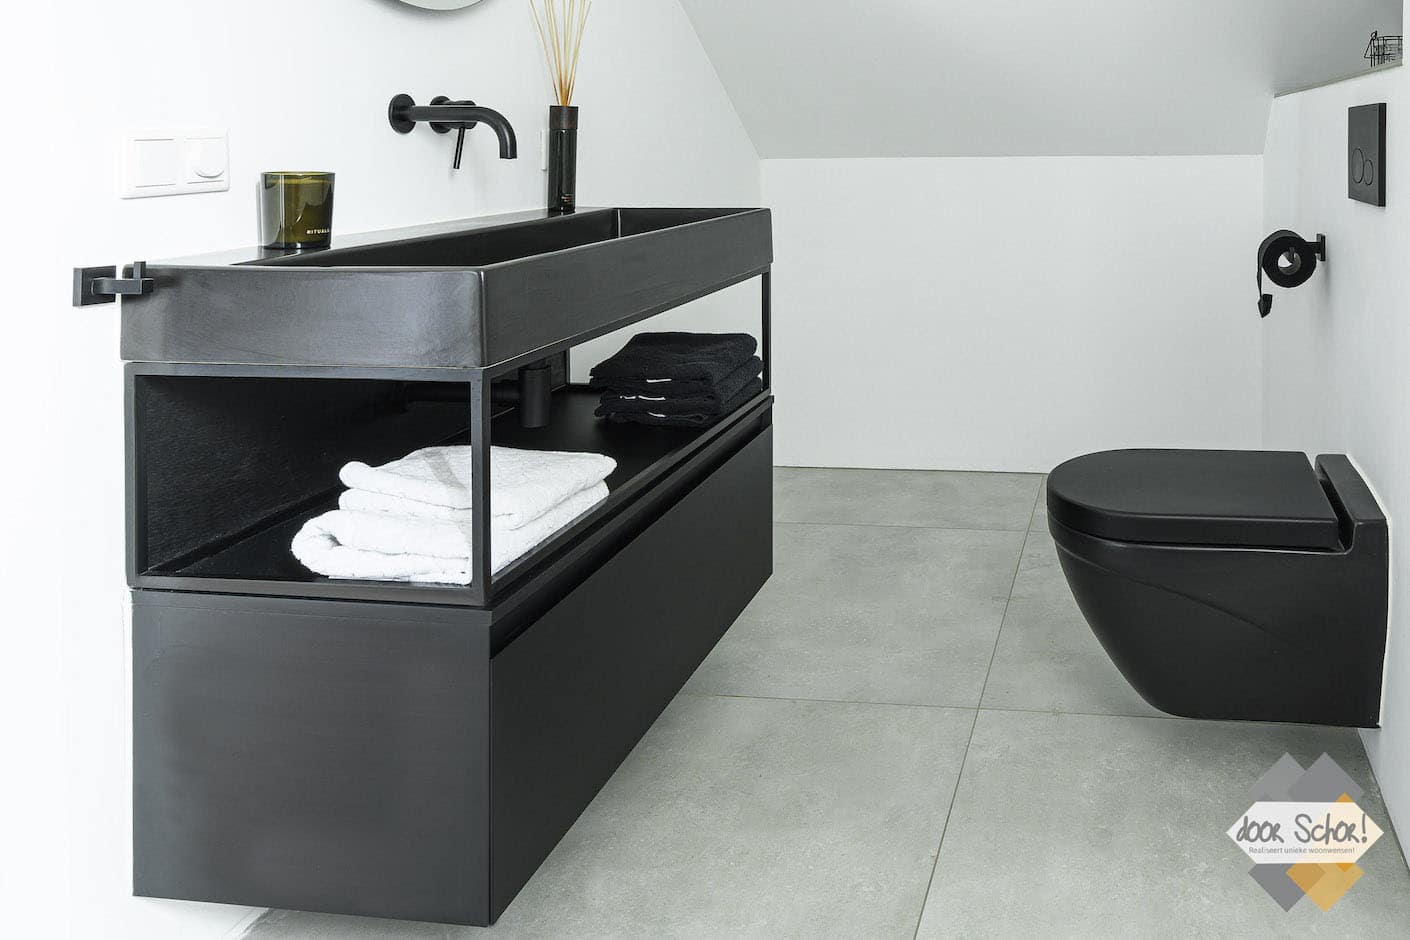 Badkamer in Zeewolde met in zwart / wit met een grijze vloer